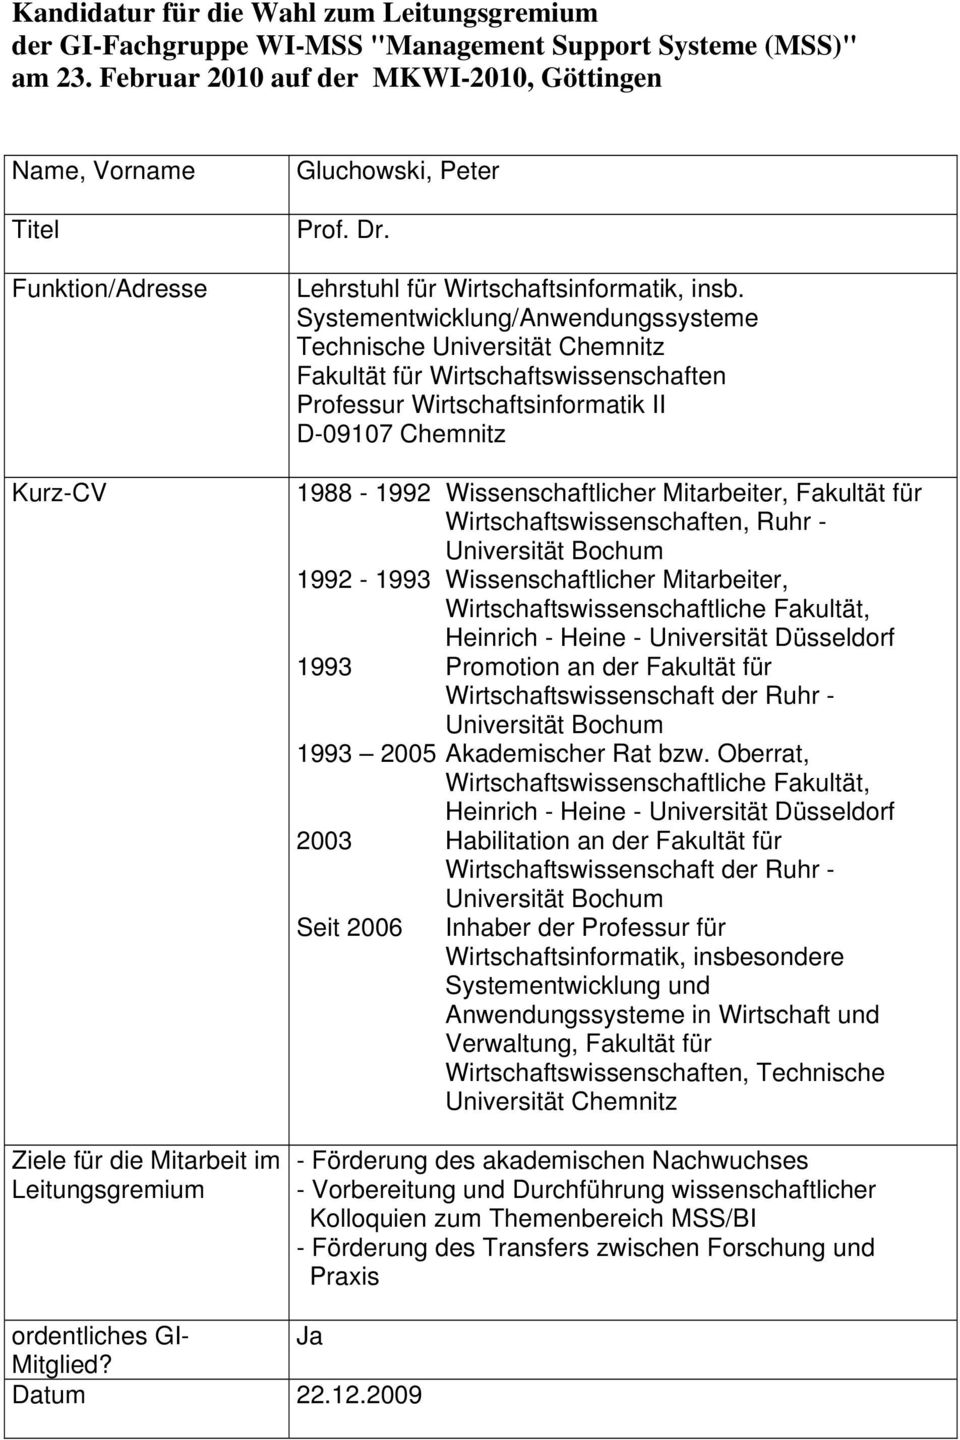 Mitarbeiter, Fakultät für Wirtschaftswissenschaften, Ruhr - 1992-1993 Wissenschaftlicher Mitarbeiter, Wirtschaftswissenschaftliche Fakultät, Heinrich - Heine - Universität Düsseldorf 1993 Promotion